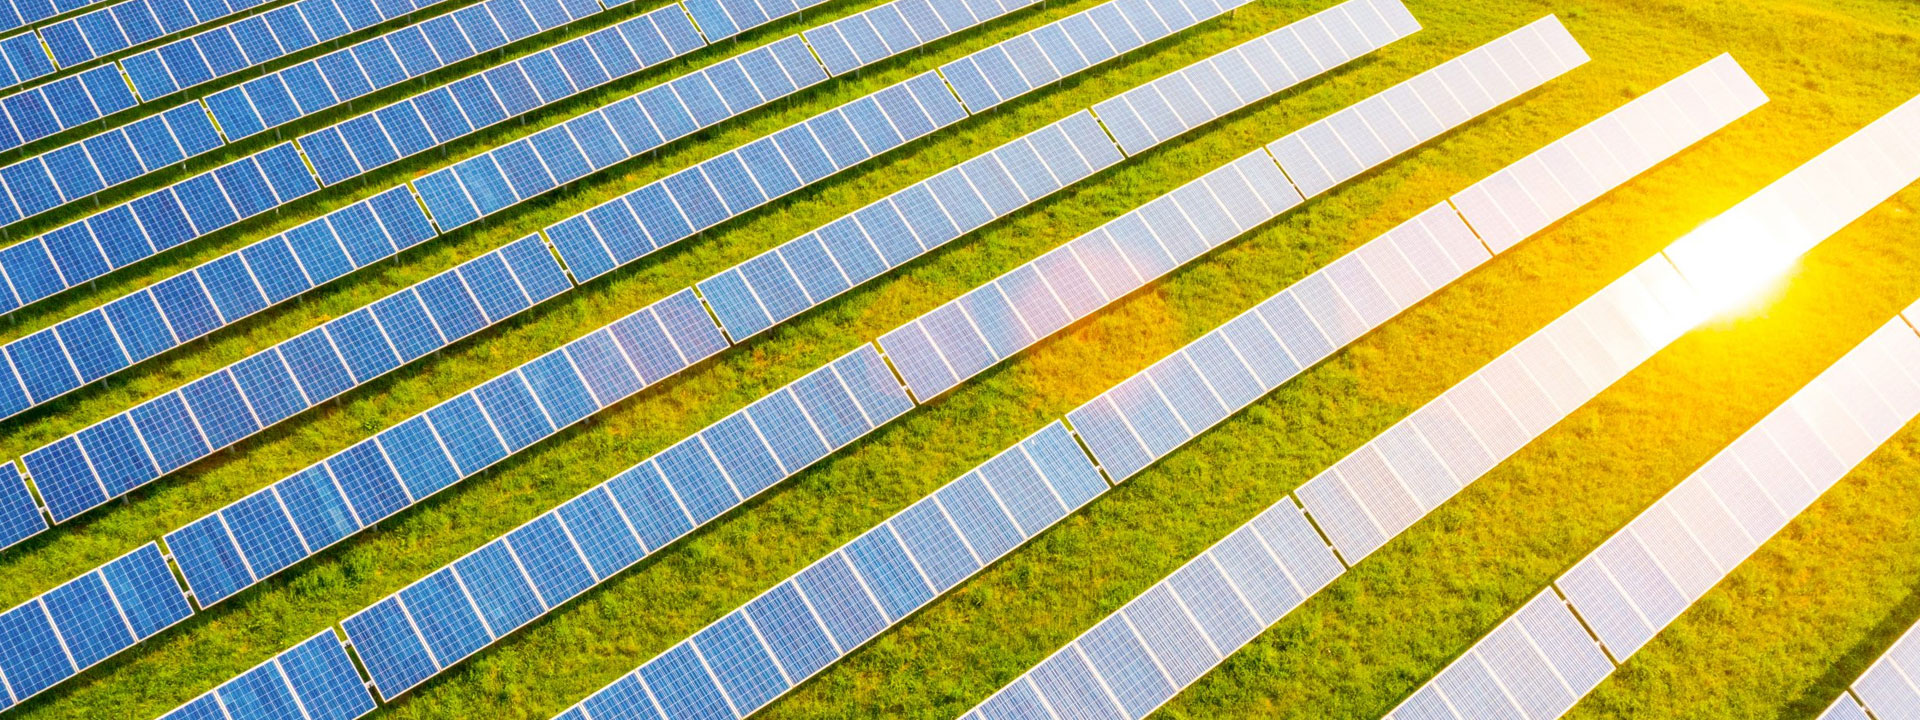 La energía solar también se destaca por su capacidad de renovación